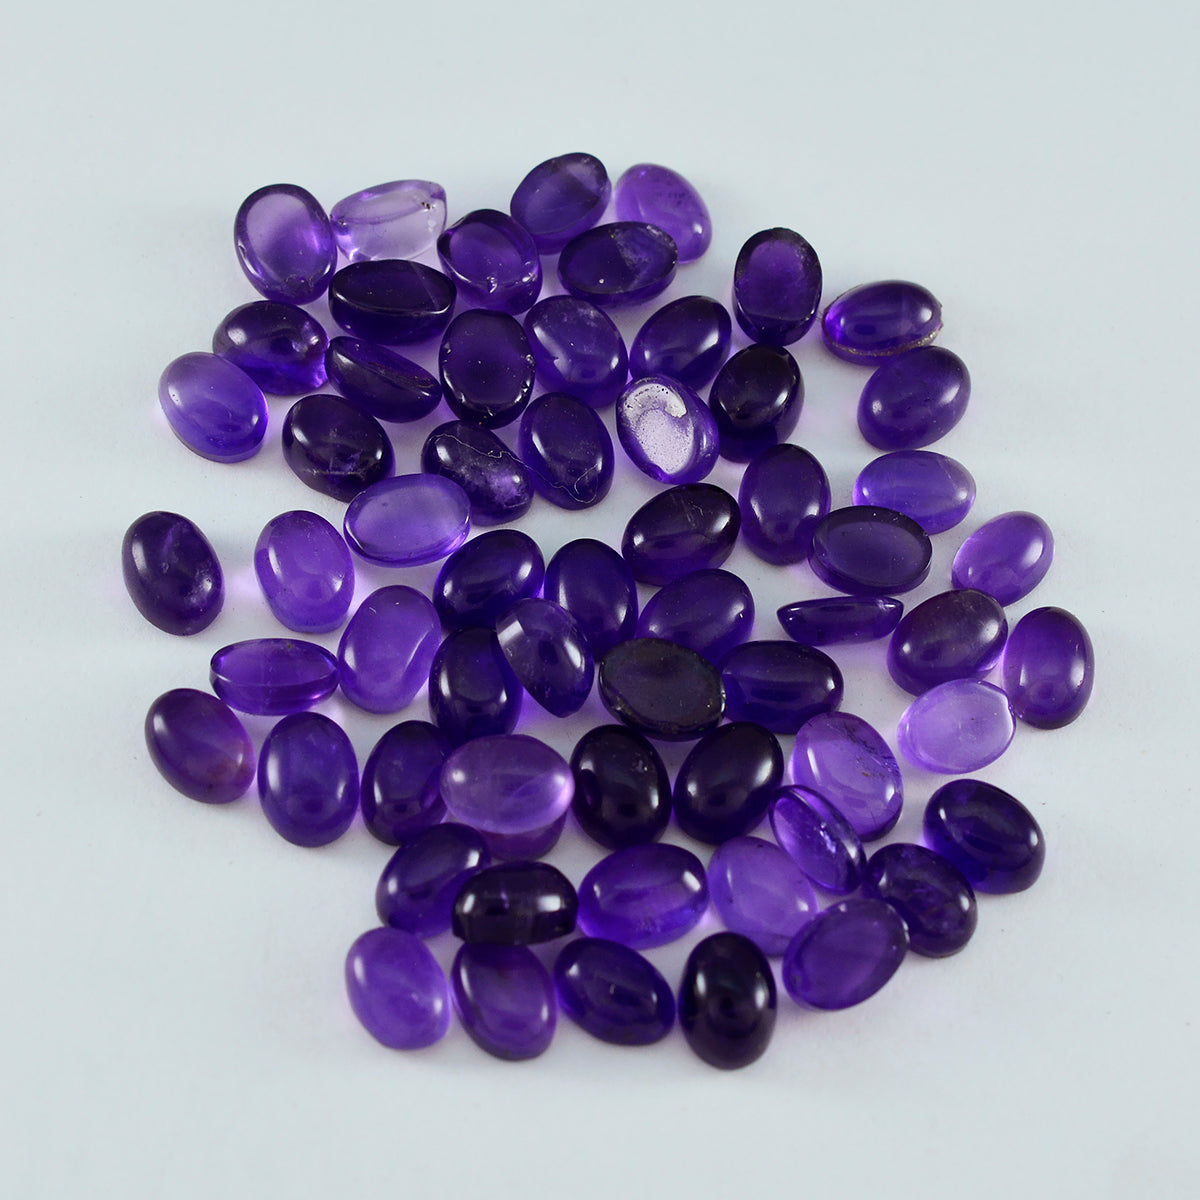 riyogems 1pc cabochon d'améthyste violette 3x5 mm forme ovale a1 pierres précieuses de qualité